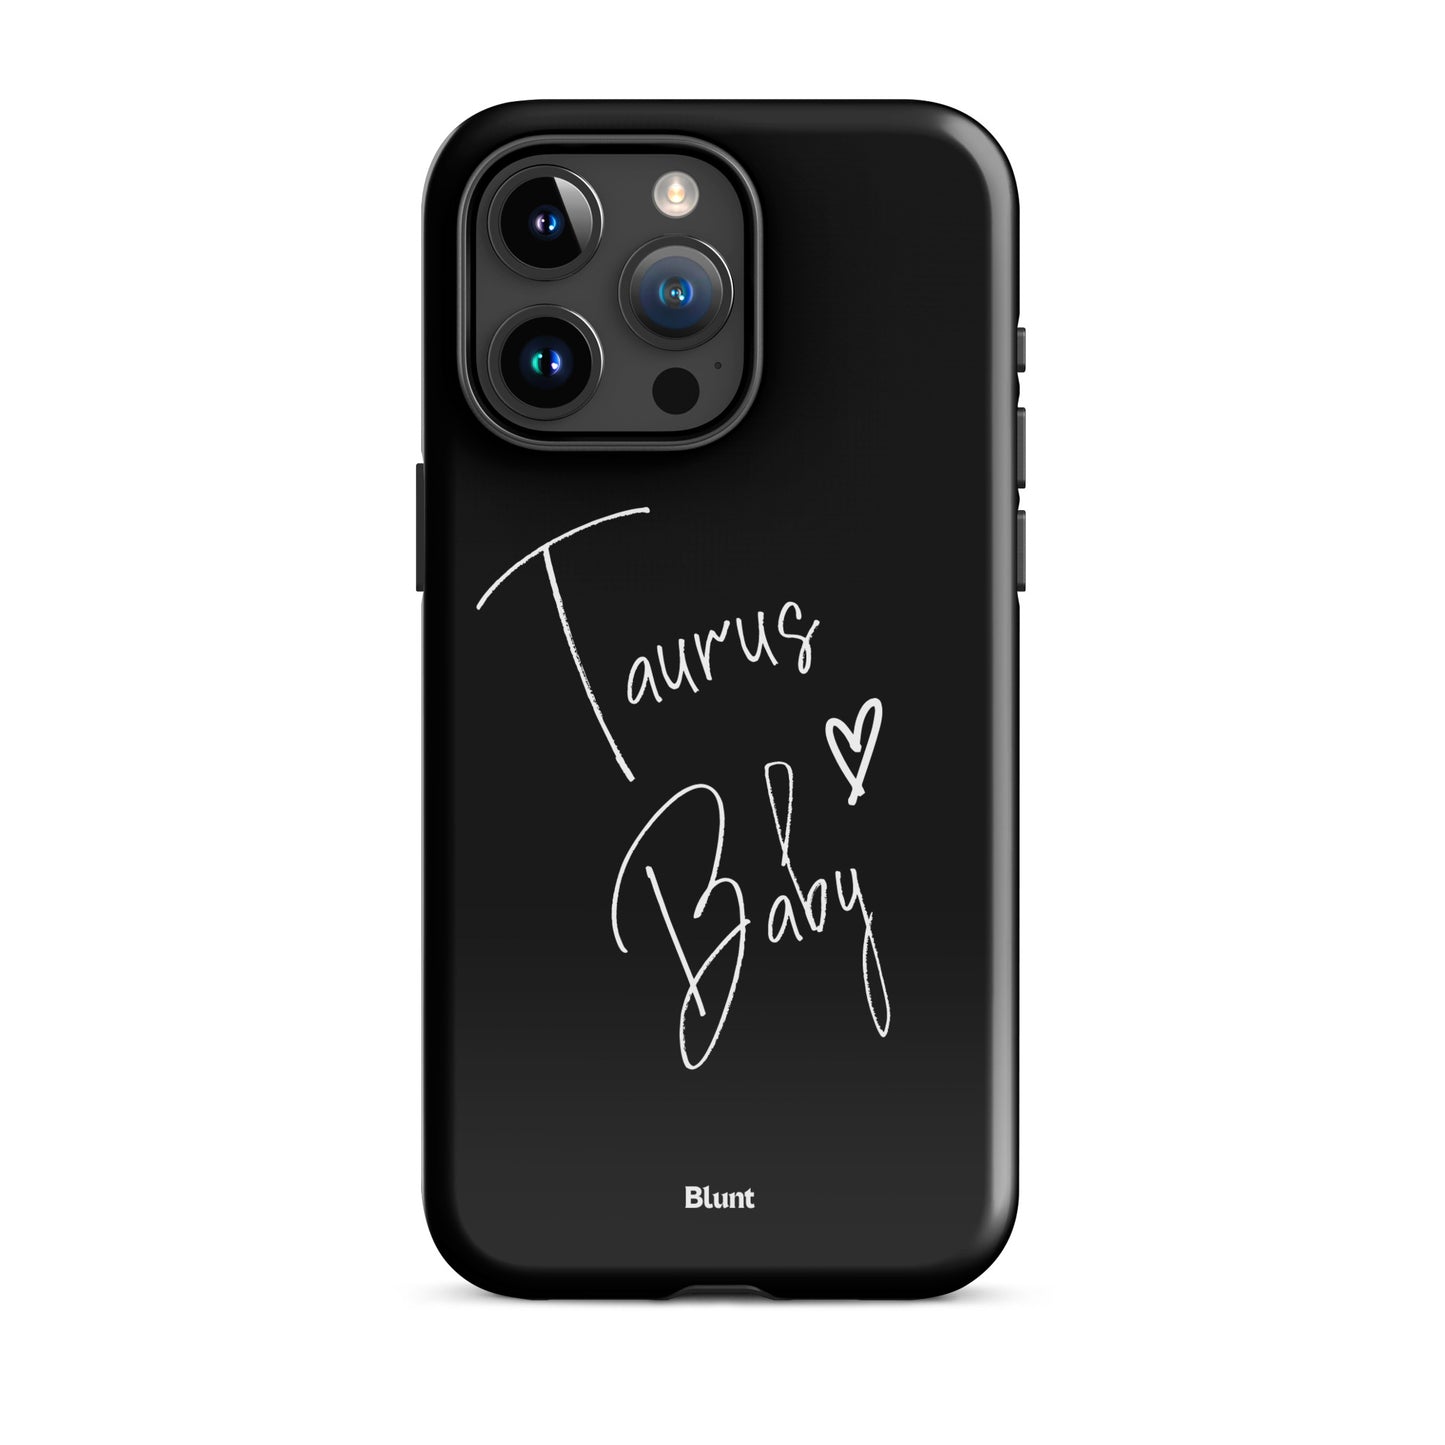 Taurus Baby iPhone Case